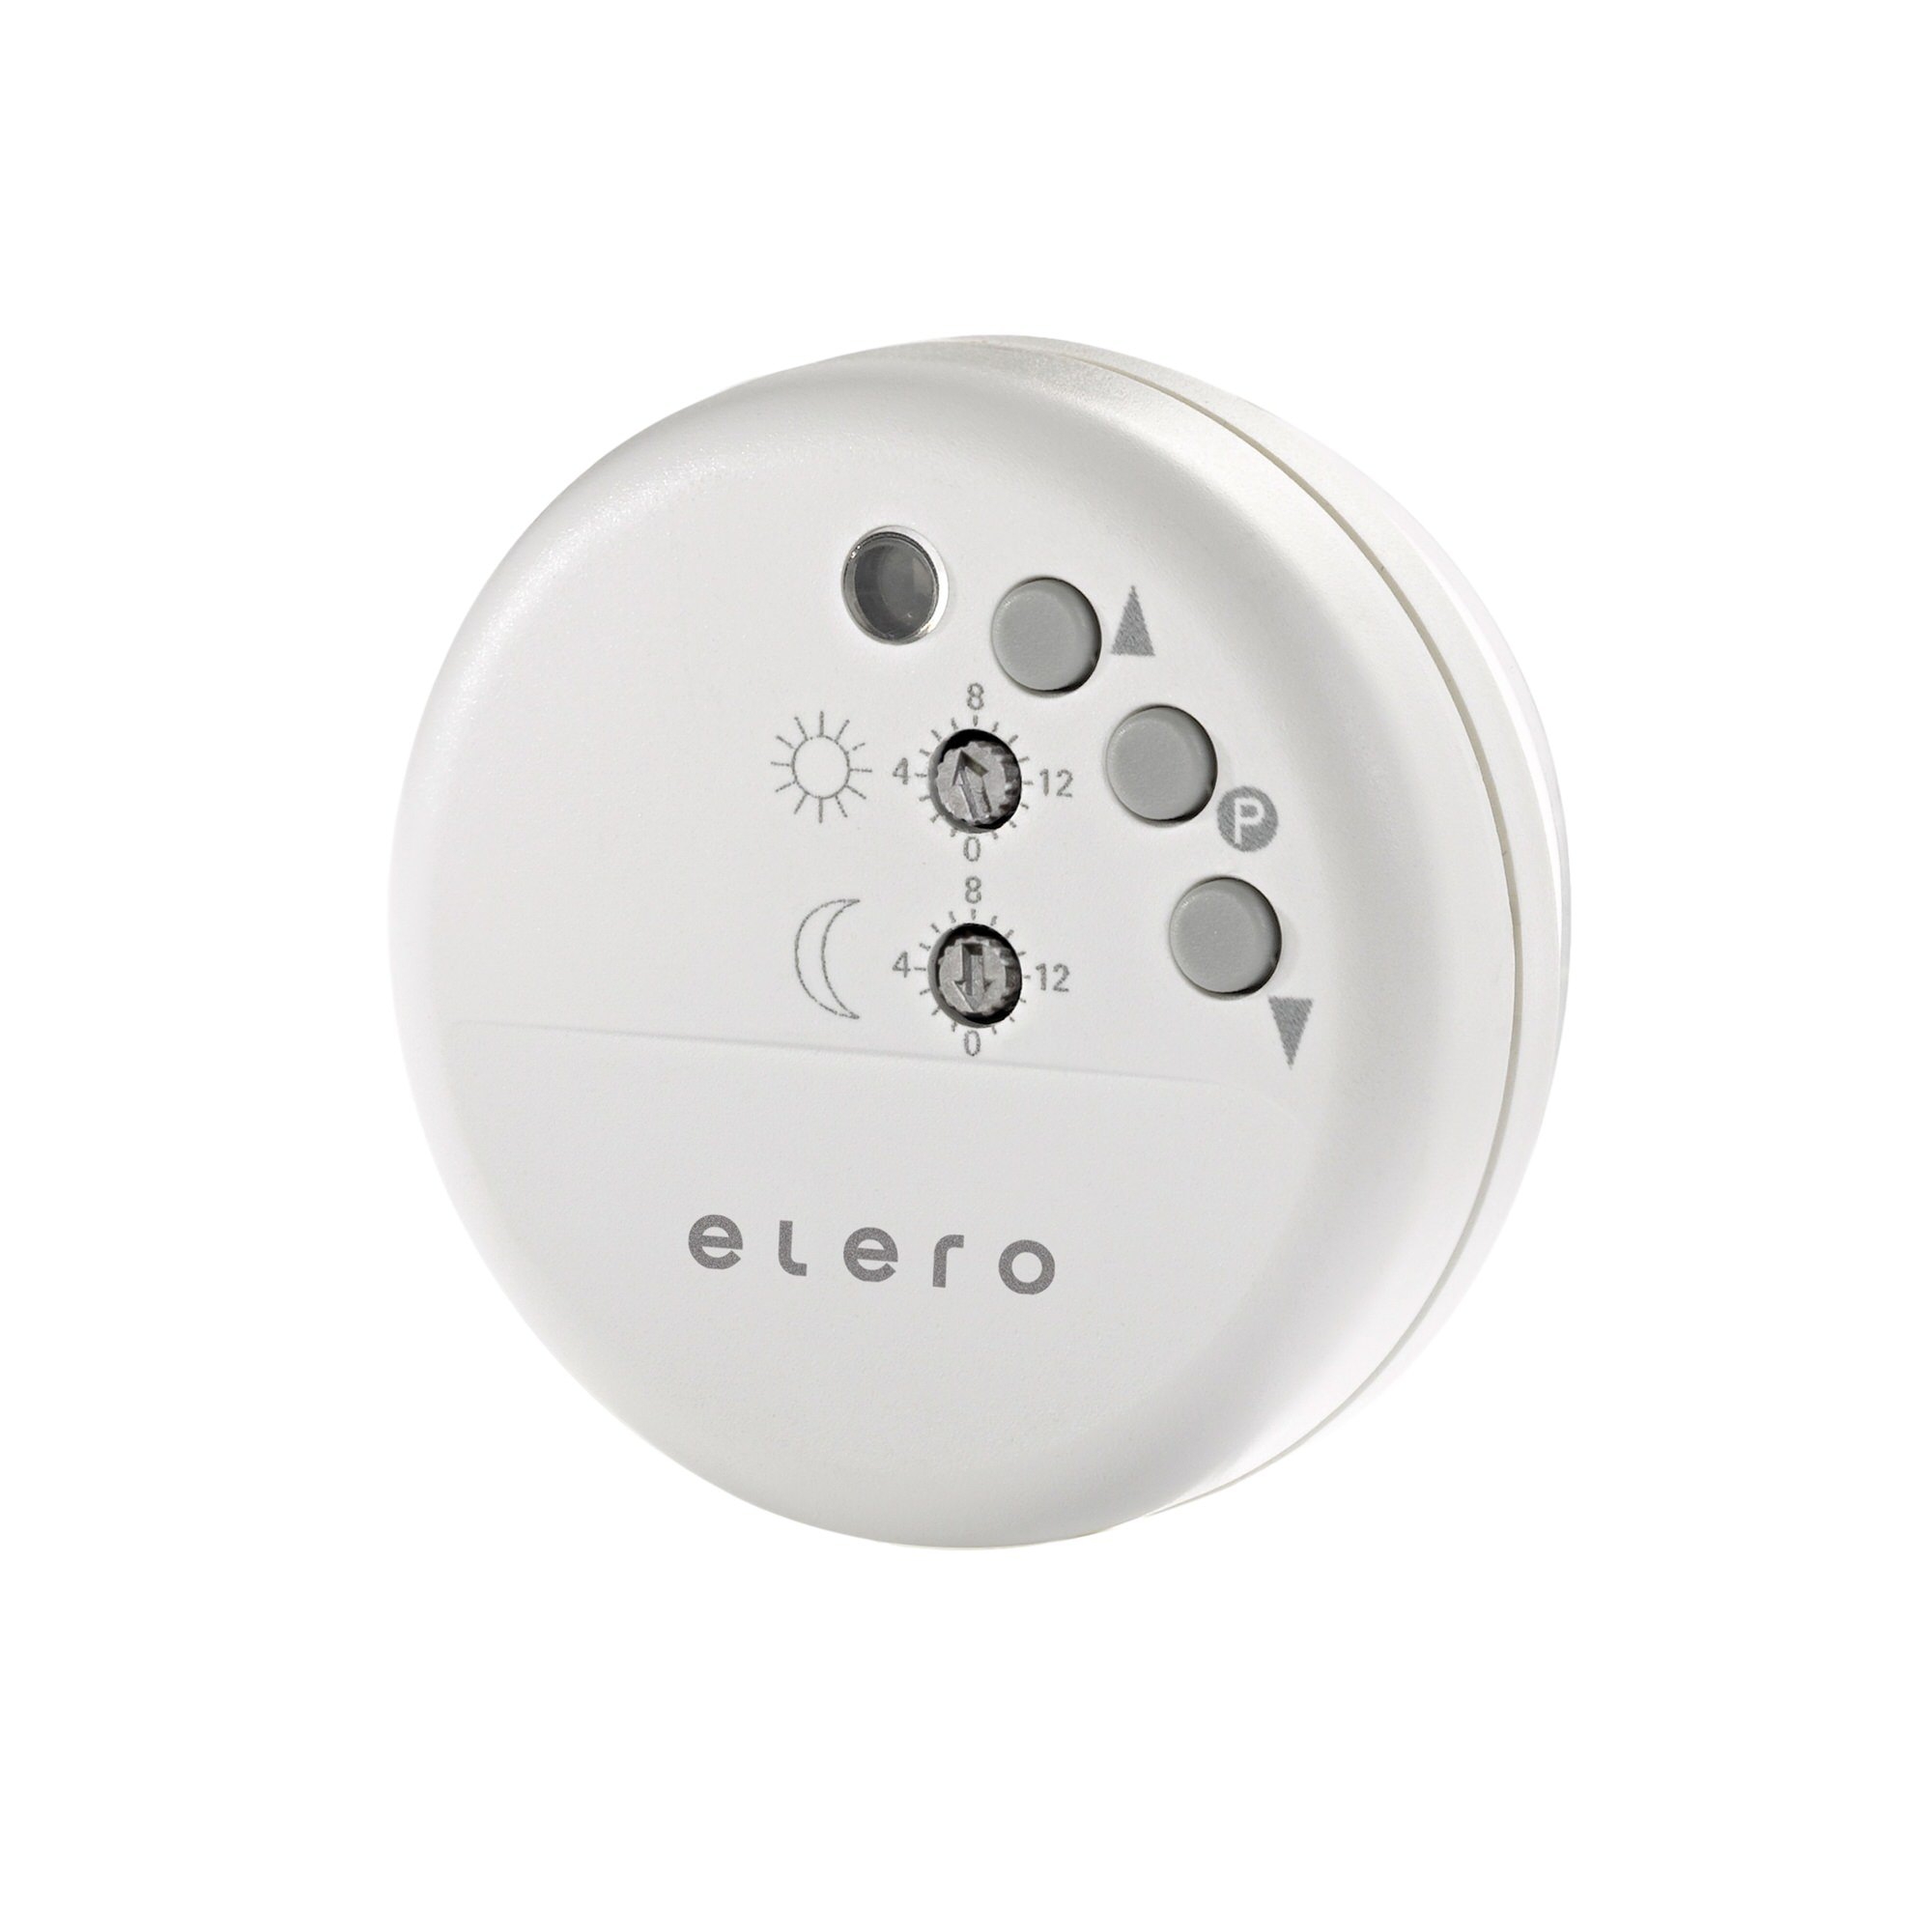 elero Lumo-868, Funksensor für Licht-, Dämmerung und Glasbruch